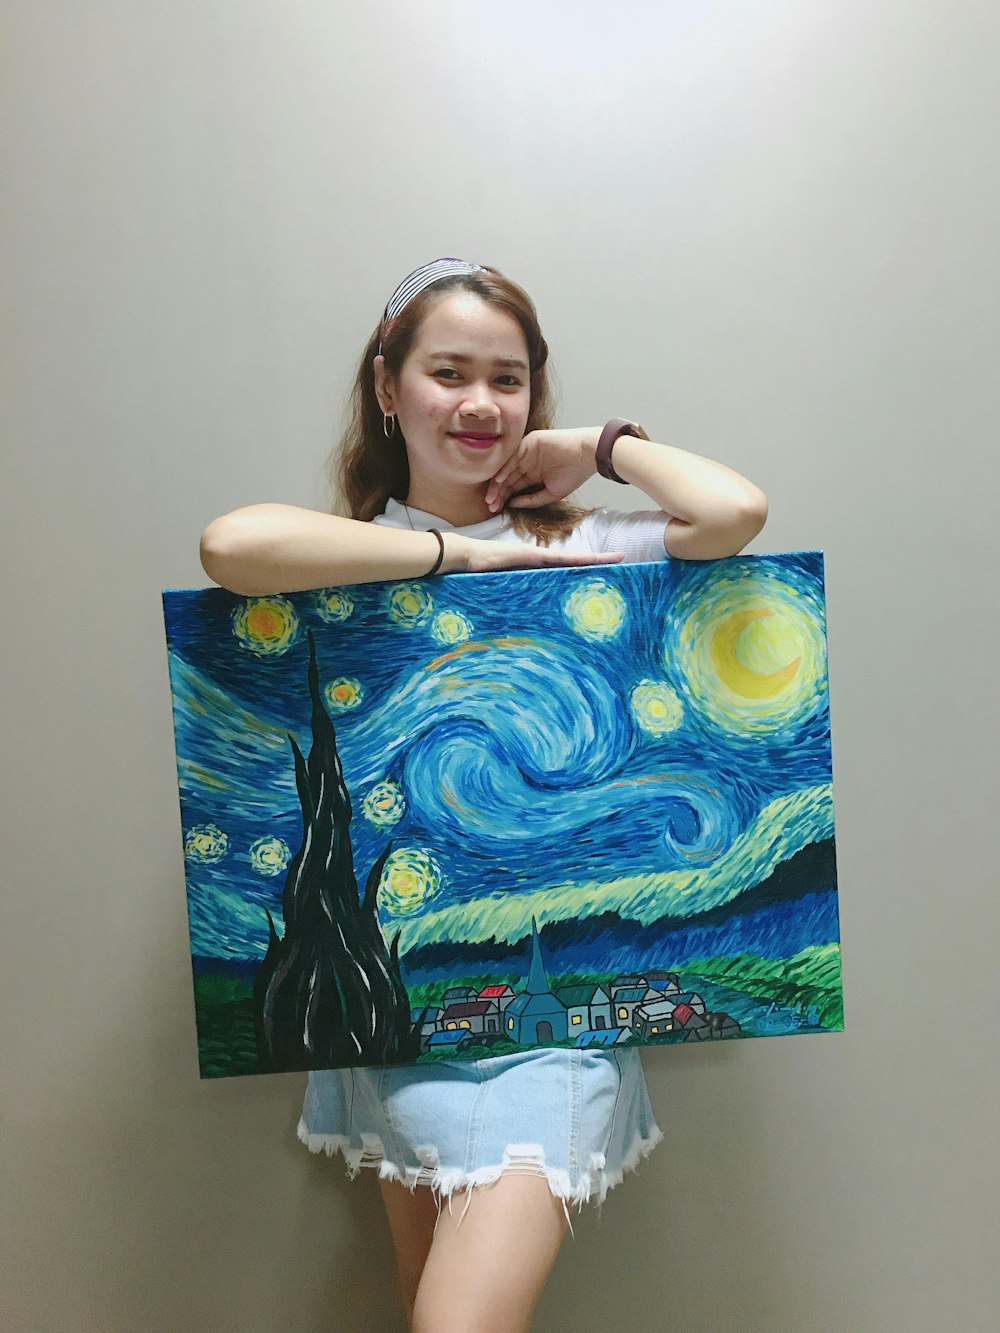 빈센트 반 고흐 (Vincent Van Gogh)의 별이 빛나는 밤 그림을 들고 서서 웃는 여자